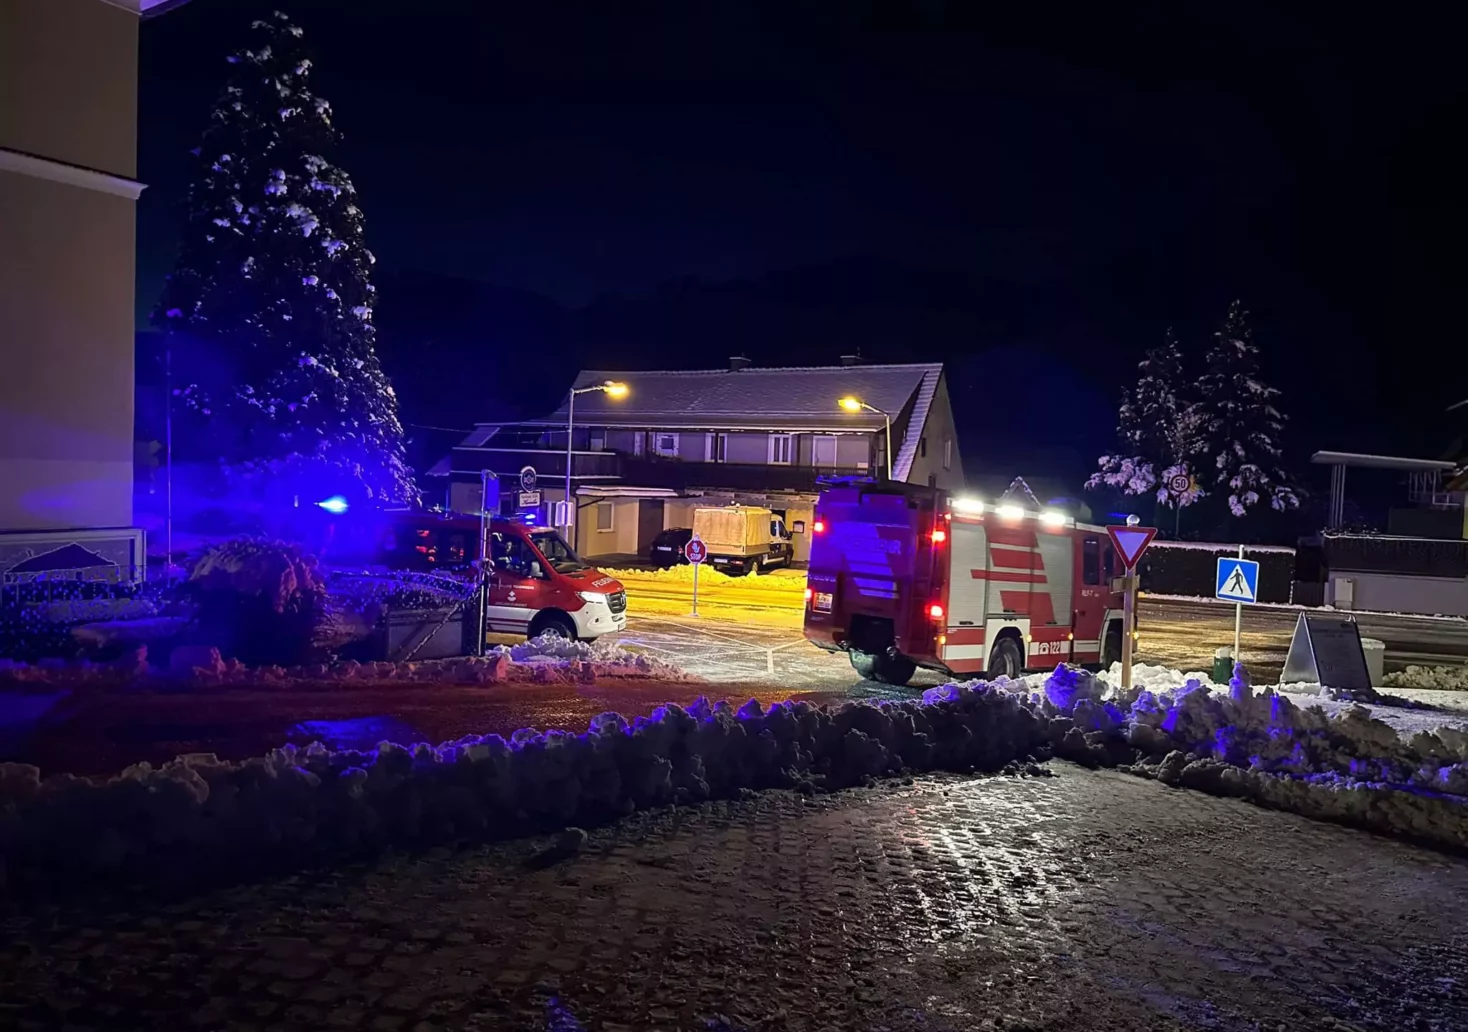 Feuerwehreinsatz zu Weihnachten: Ofenüberhitzung löste Alarm aus